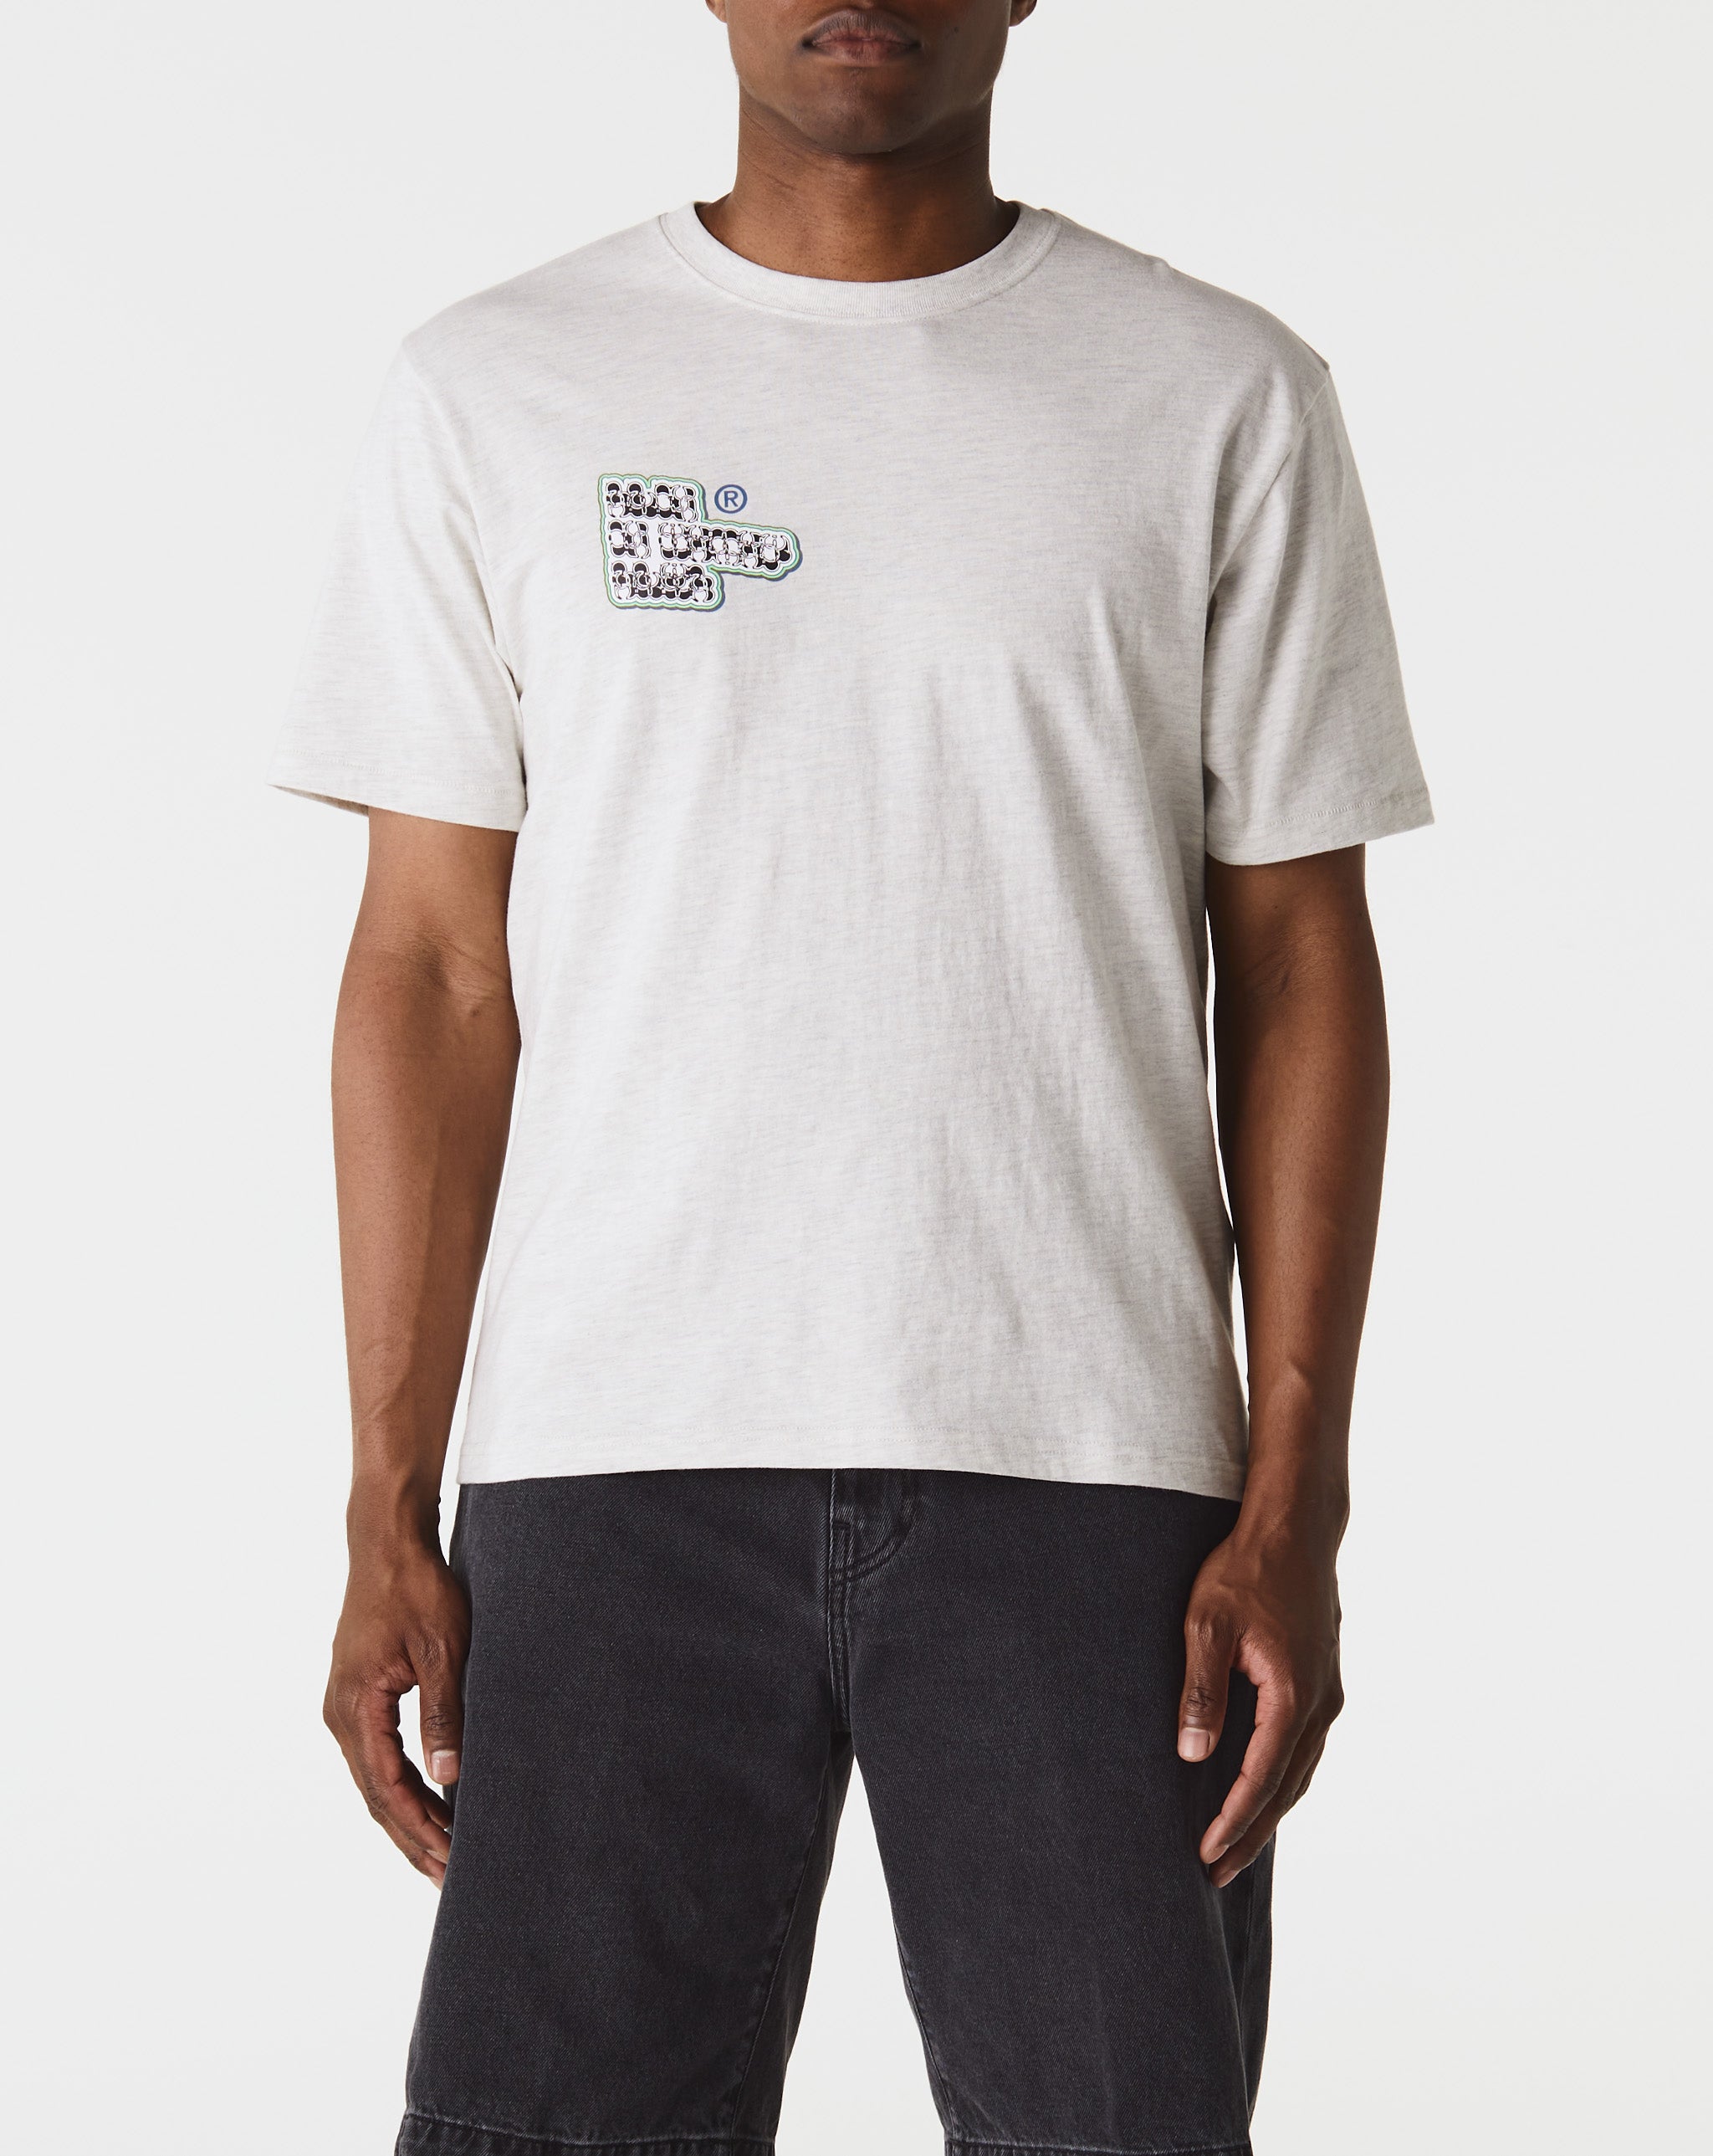 Kayano Alphabet T-Shirt  - Cheap Urlfreeze Jordan outlet